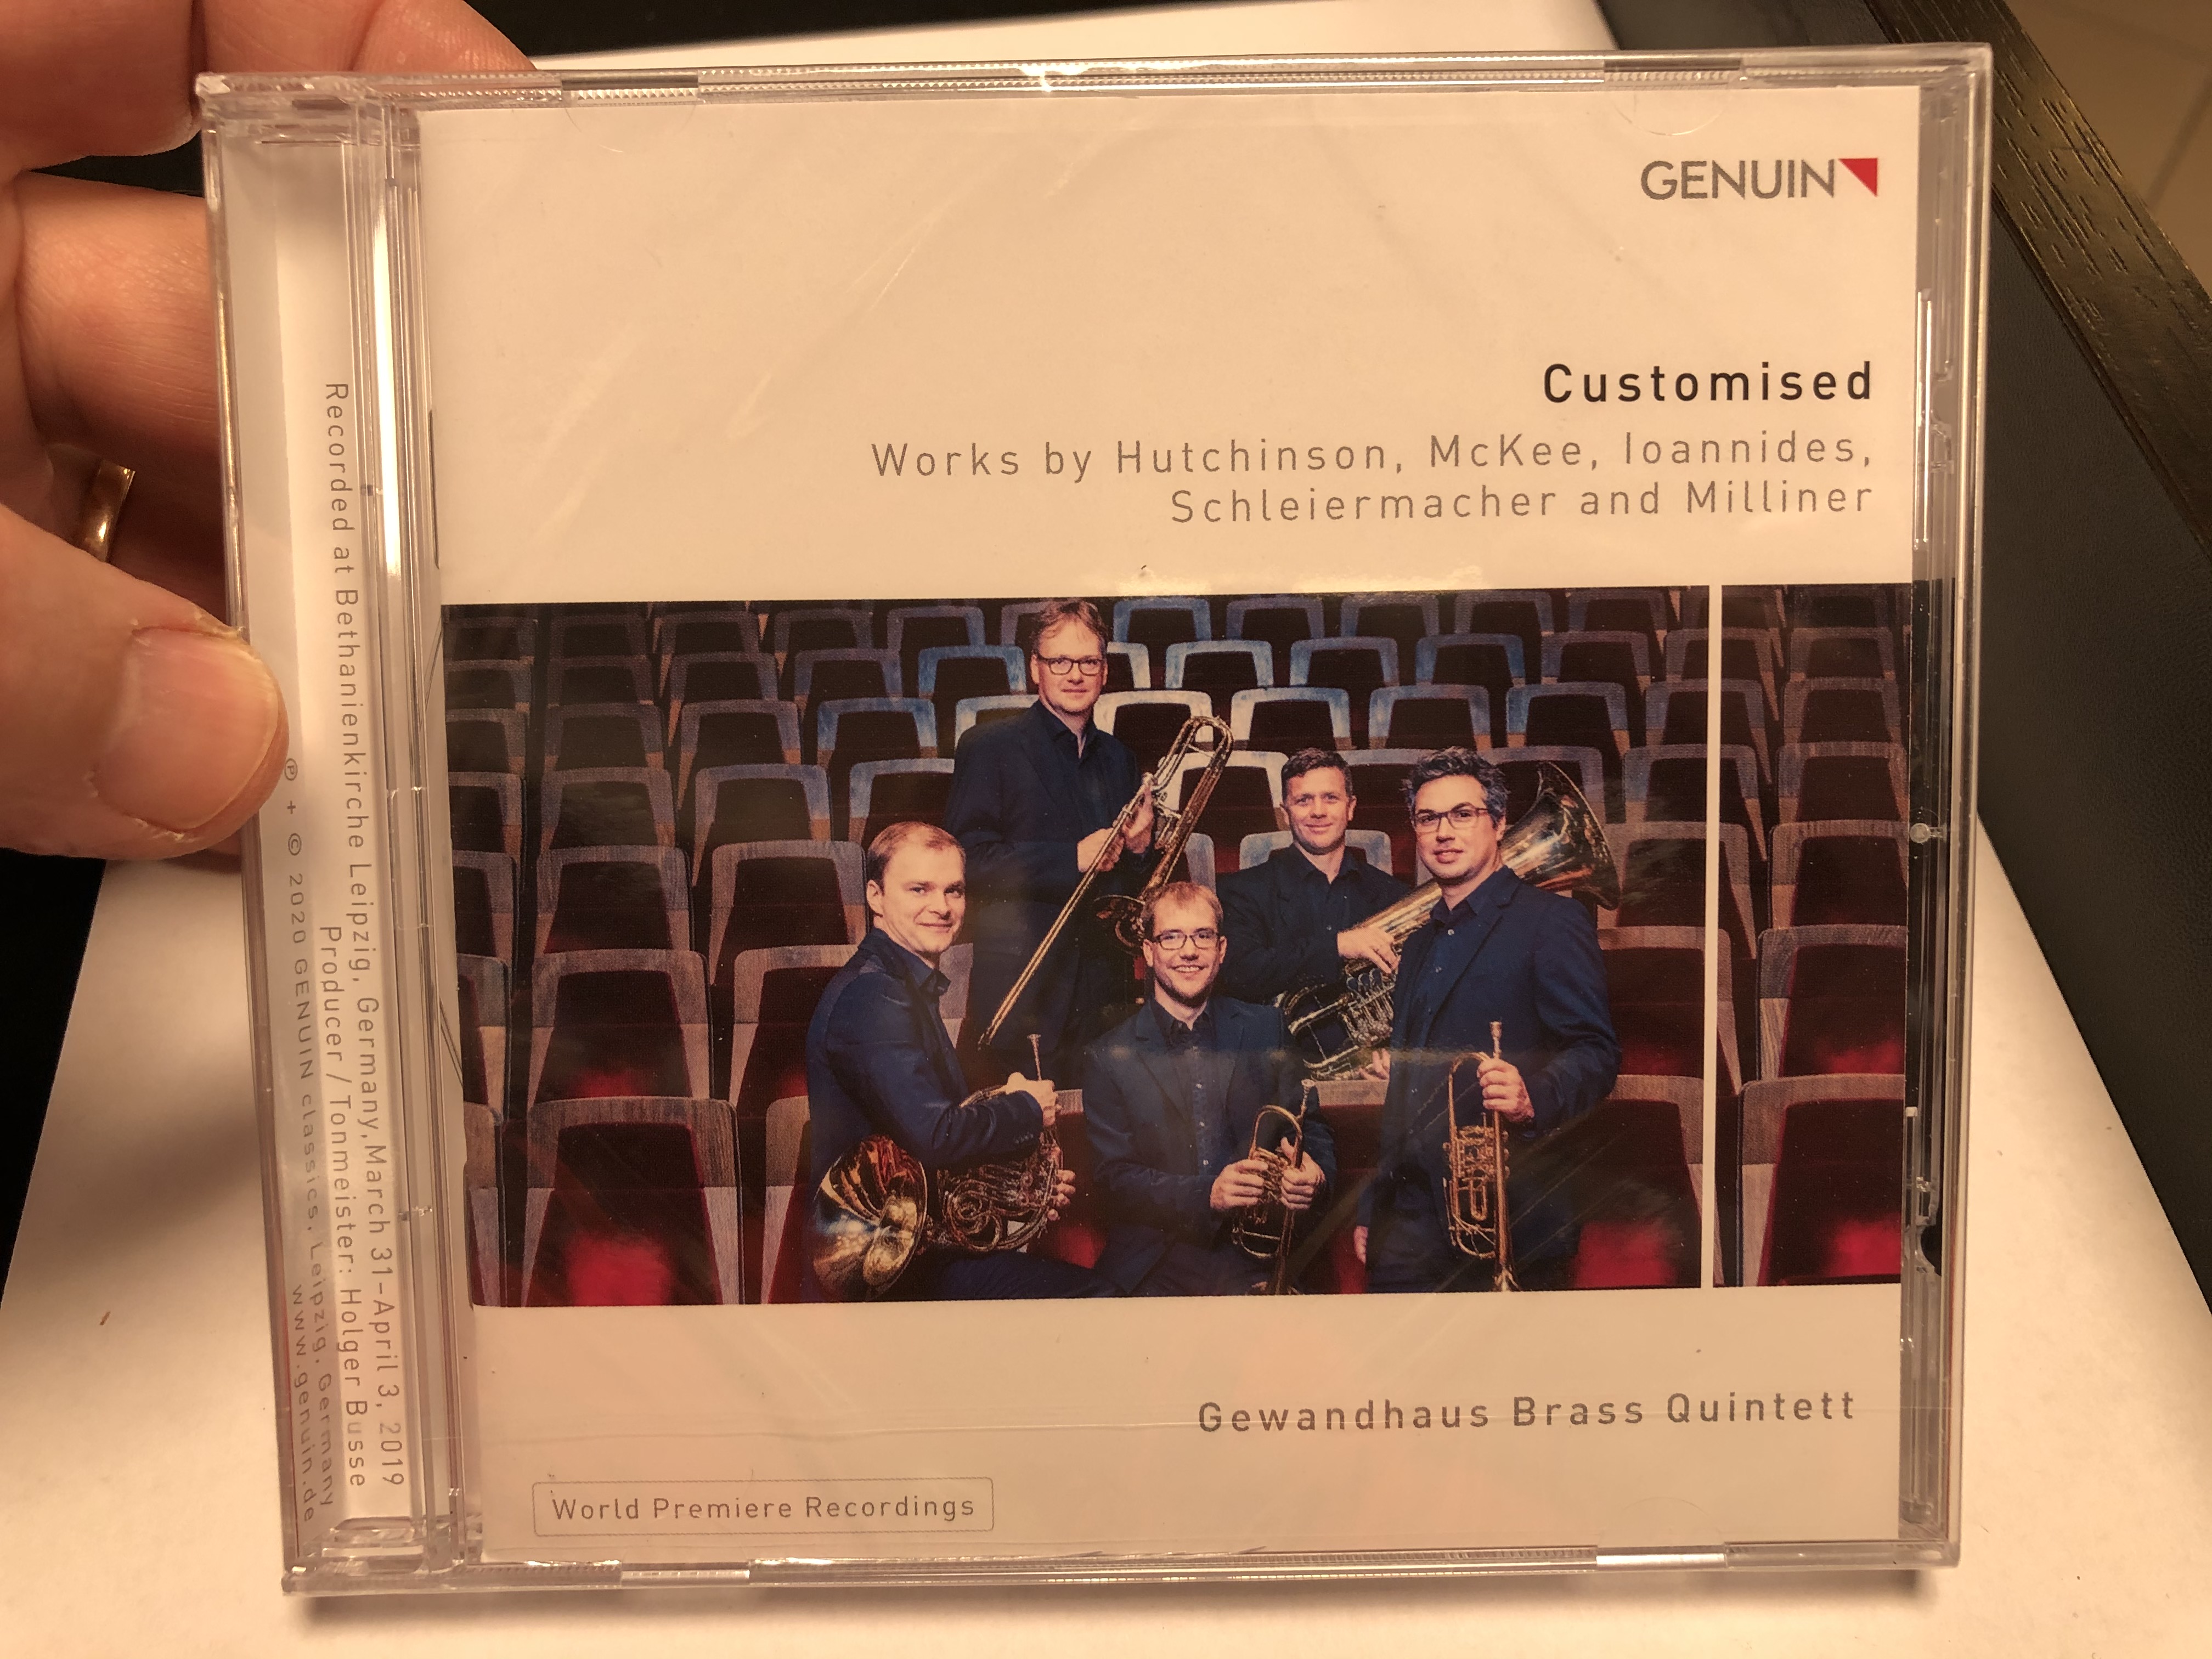 customised-works-by-hutchinson-mckee-loannides-schleiermacher-and-milliner-gewandhaus-brass-quintett-world-premiere-recordings-genuin-classics-audio-cd-2020-gen-20693-1-.jpg